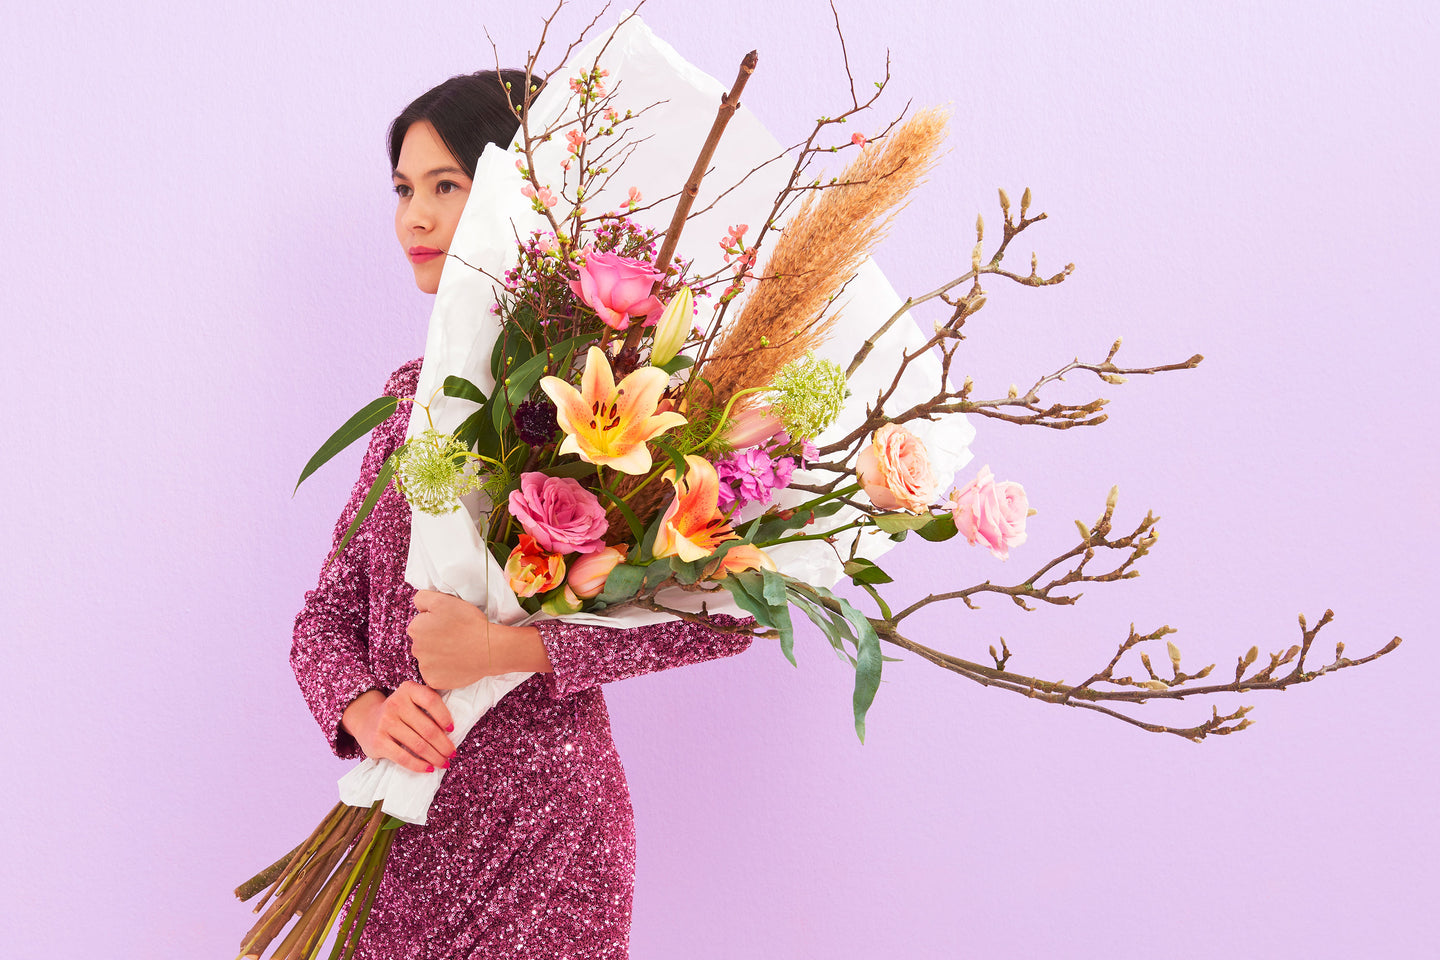 Feiere die Liebe mit einem wirklich liebevollen Blumen-Bouquet